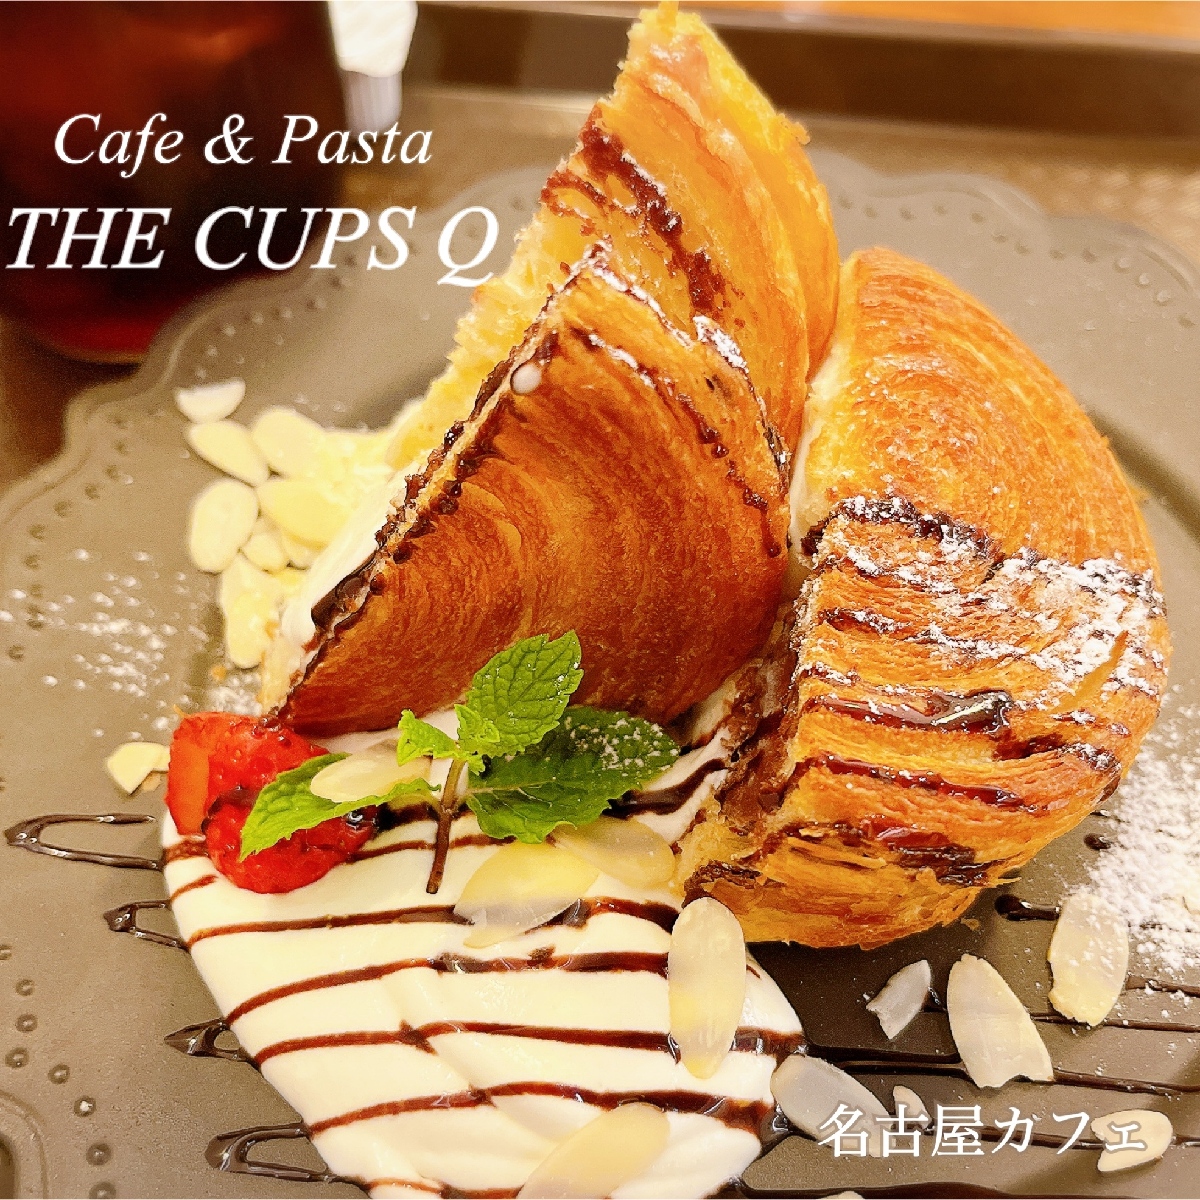 【名古屋】超人気カフェがリニューアルオープンでさらに魅力的に♡《THE CUPS Q》